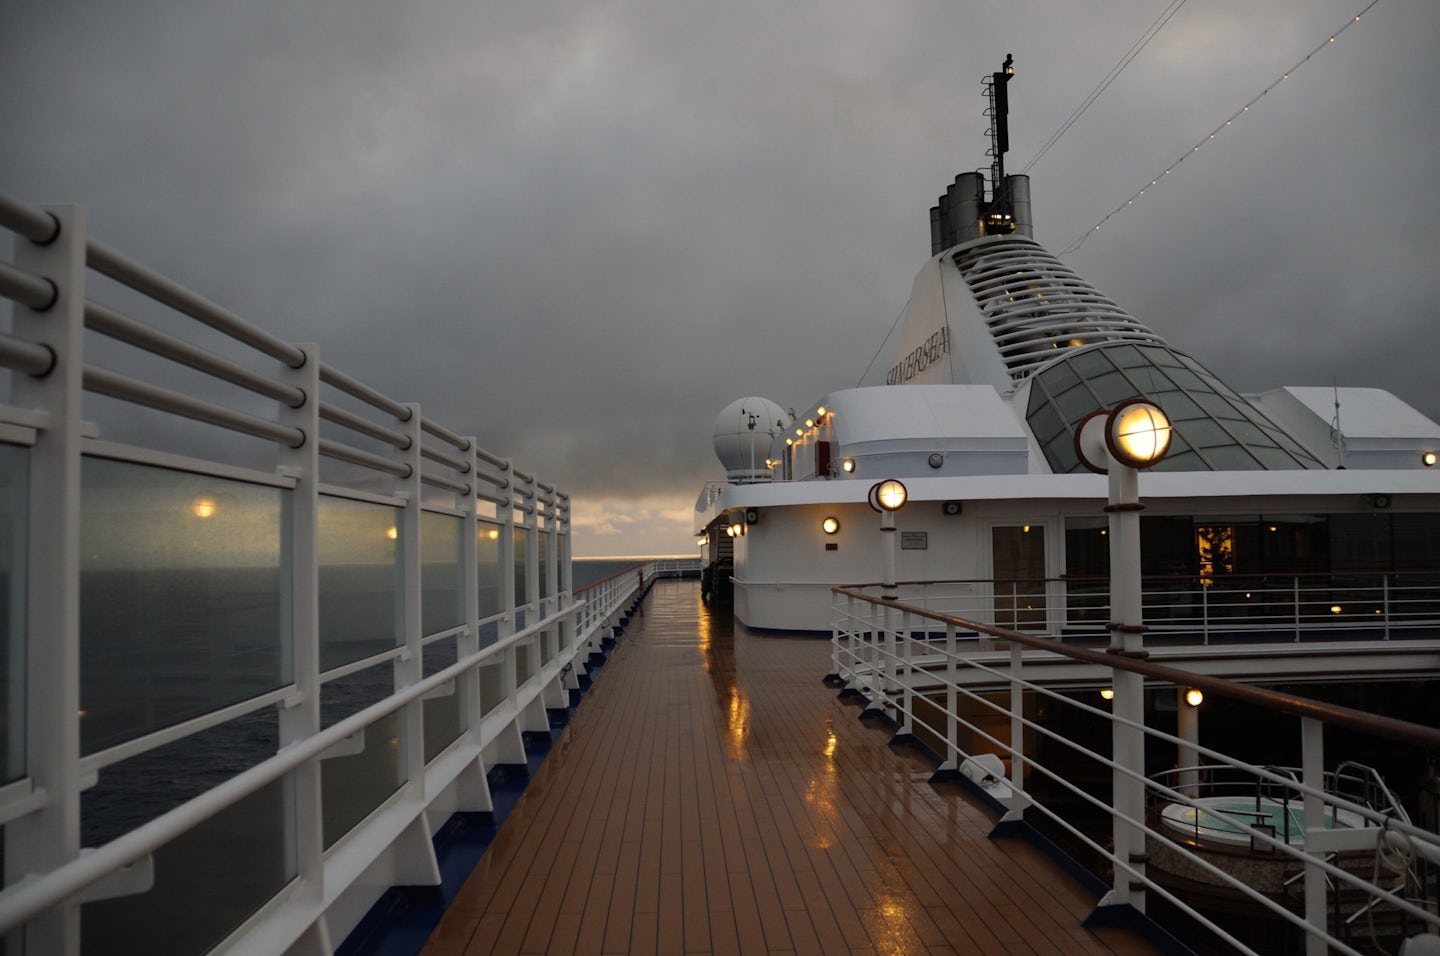 Dawn on deck